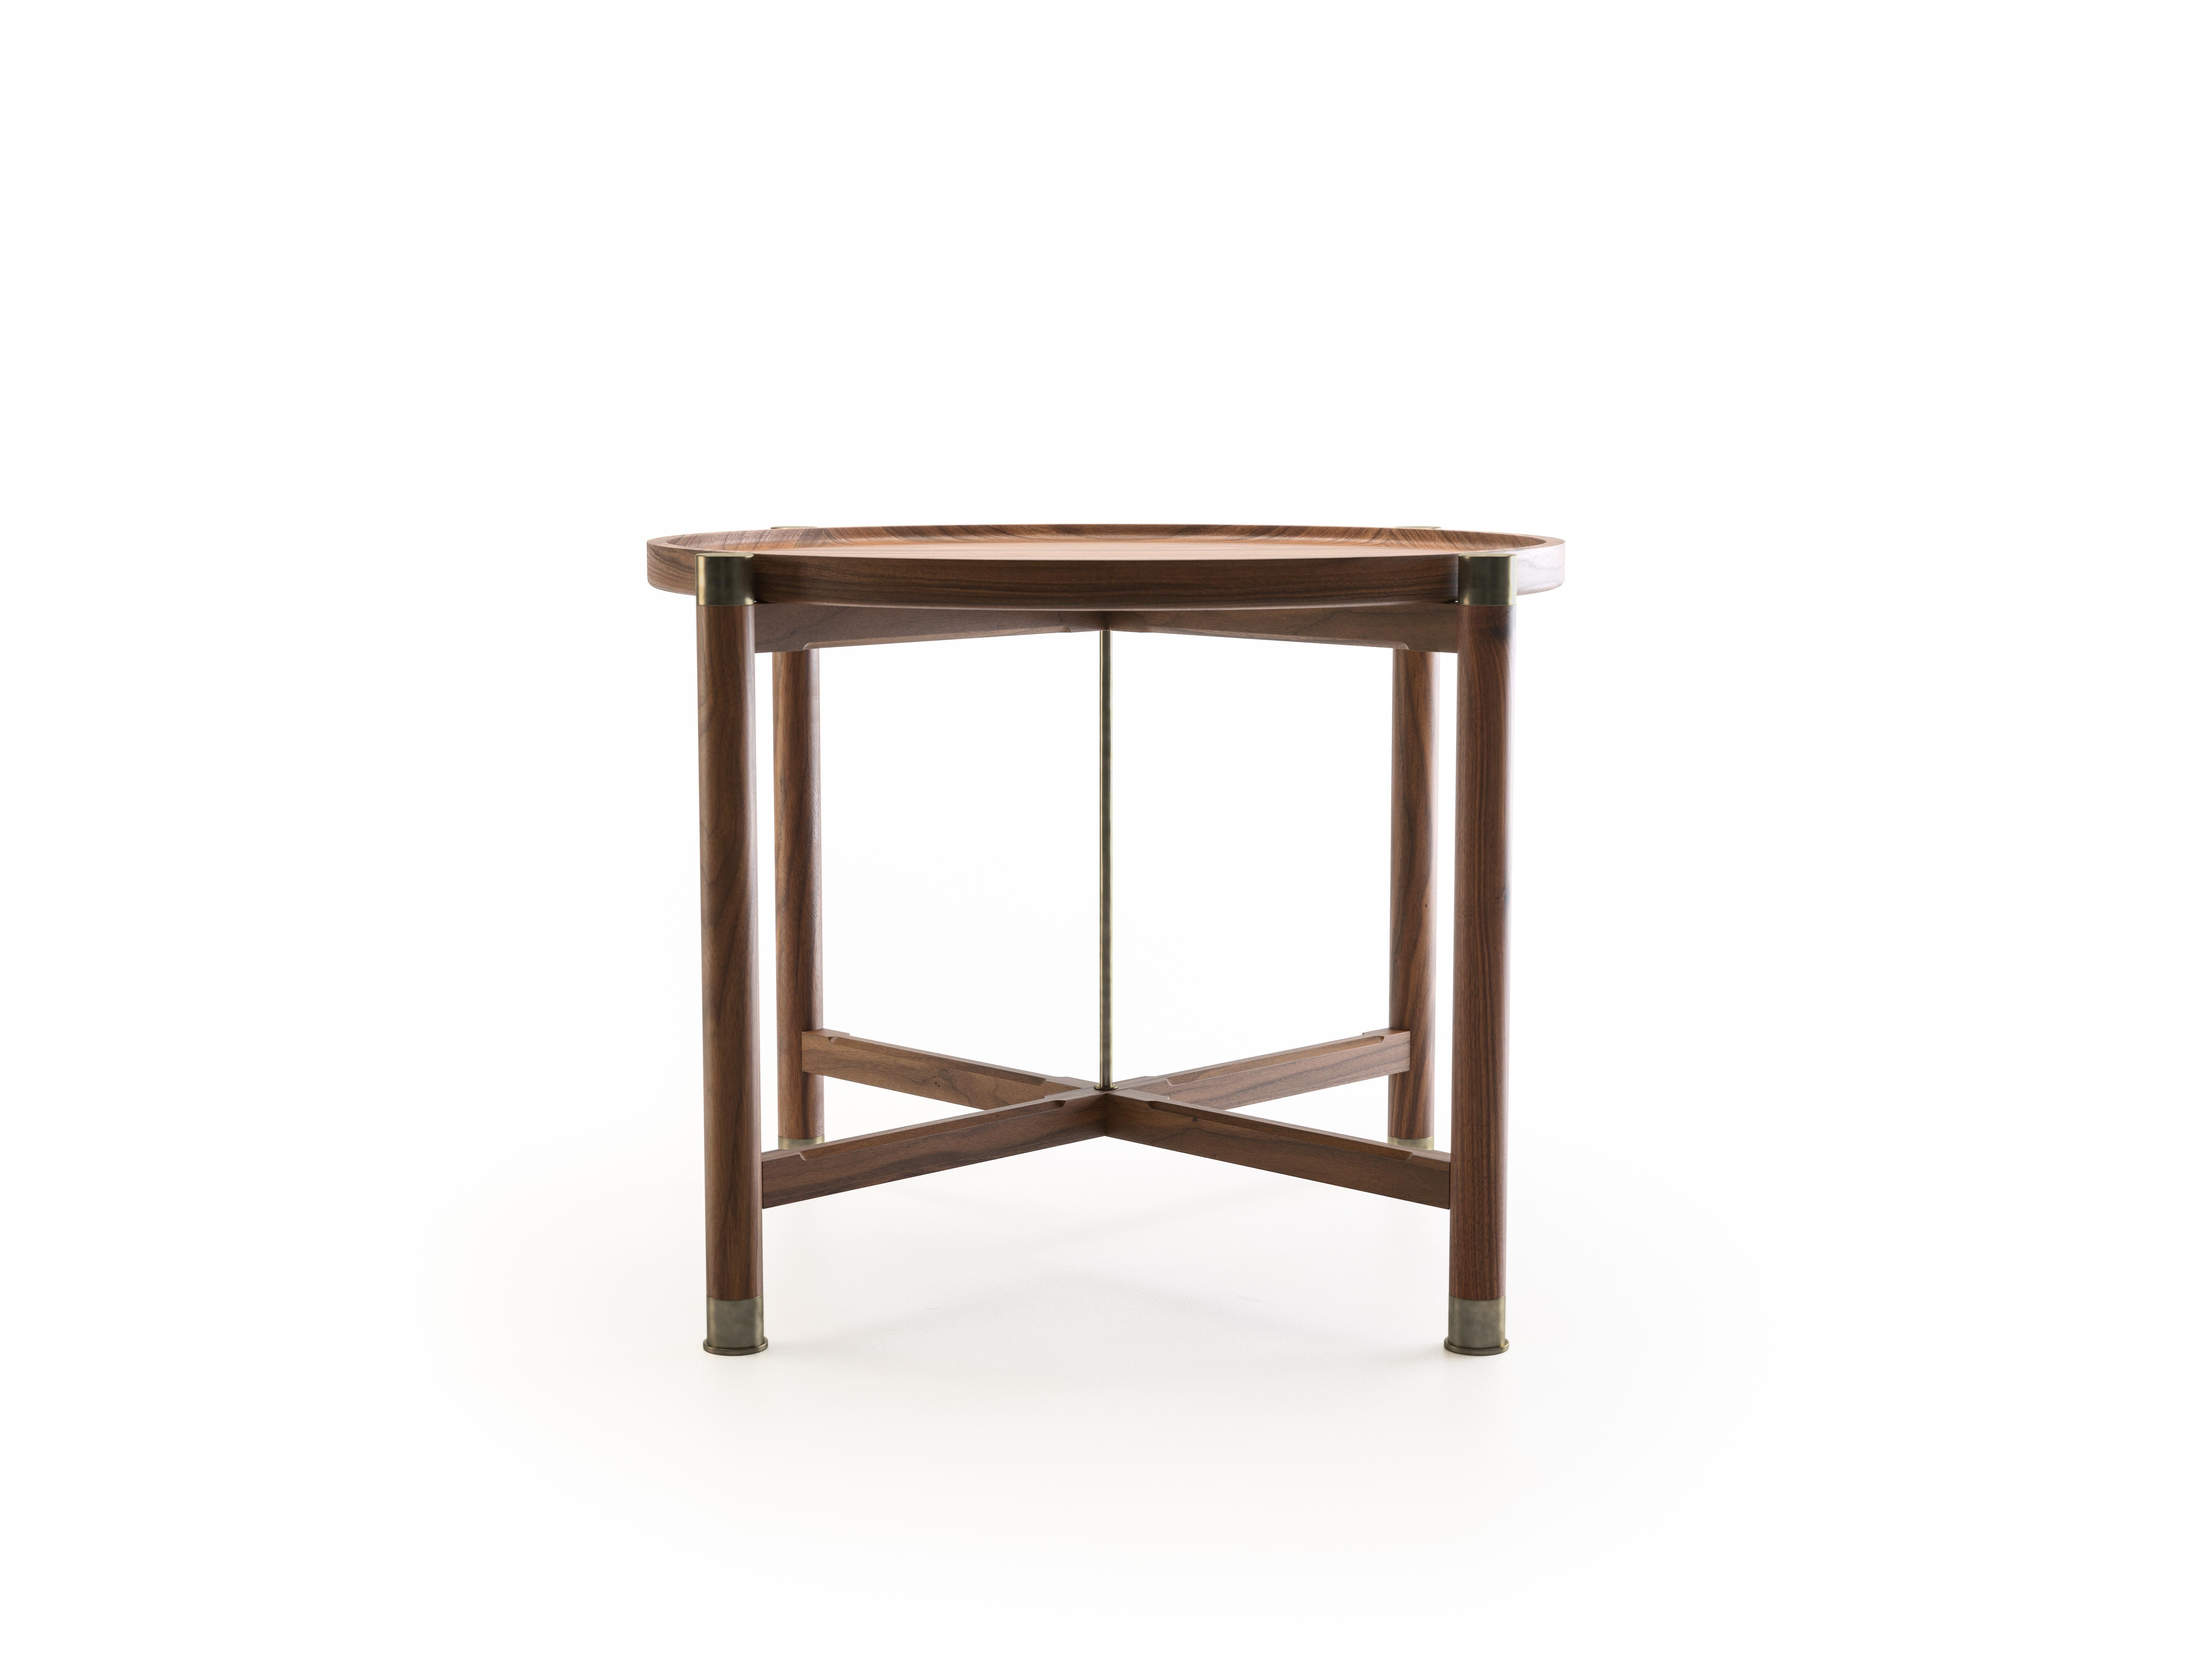 Der Otto Beistelltisch ist ein großzügig bemessener Tisch mit einer einfachen, gut gegliederten Form.
Er ist in Nussbaum oder Eiche erhältlich und verfügt über eine runde Kuppelplatte, umfangreiche Beschläge aus antikem Messing, einen zentralen